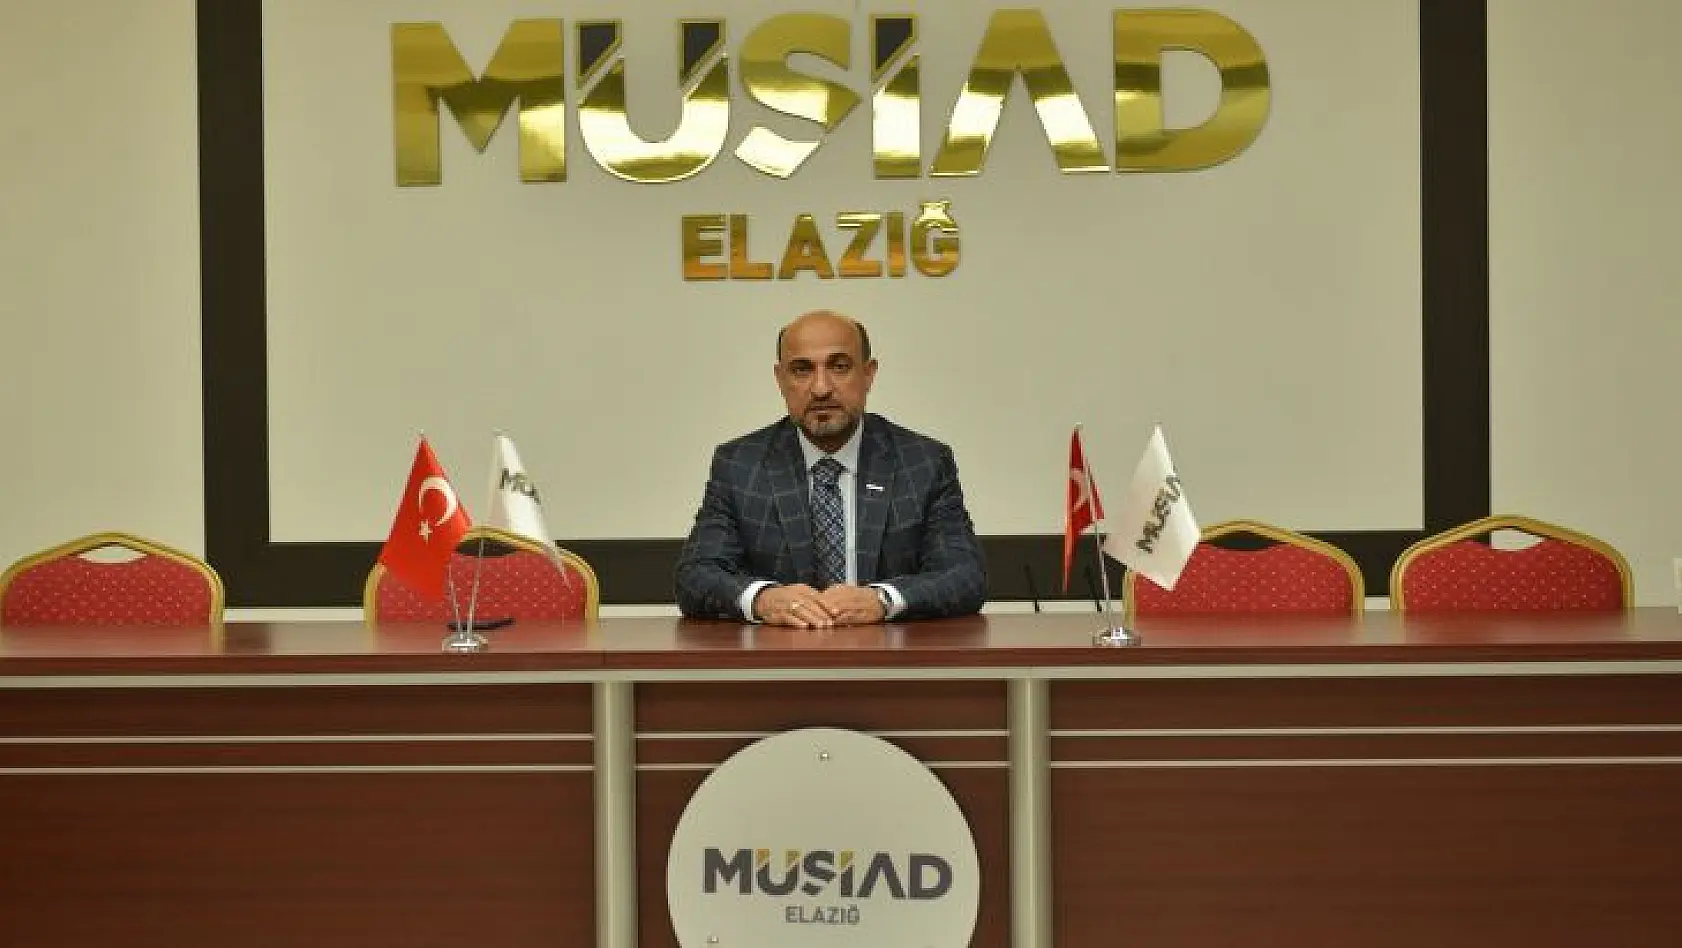 Müsiad Elazığ Azerbaycan Yolcusu